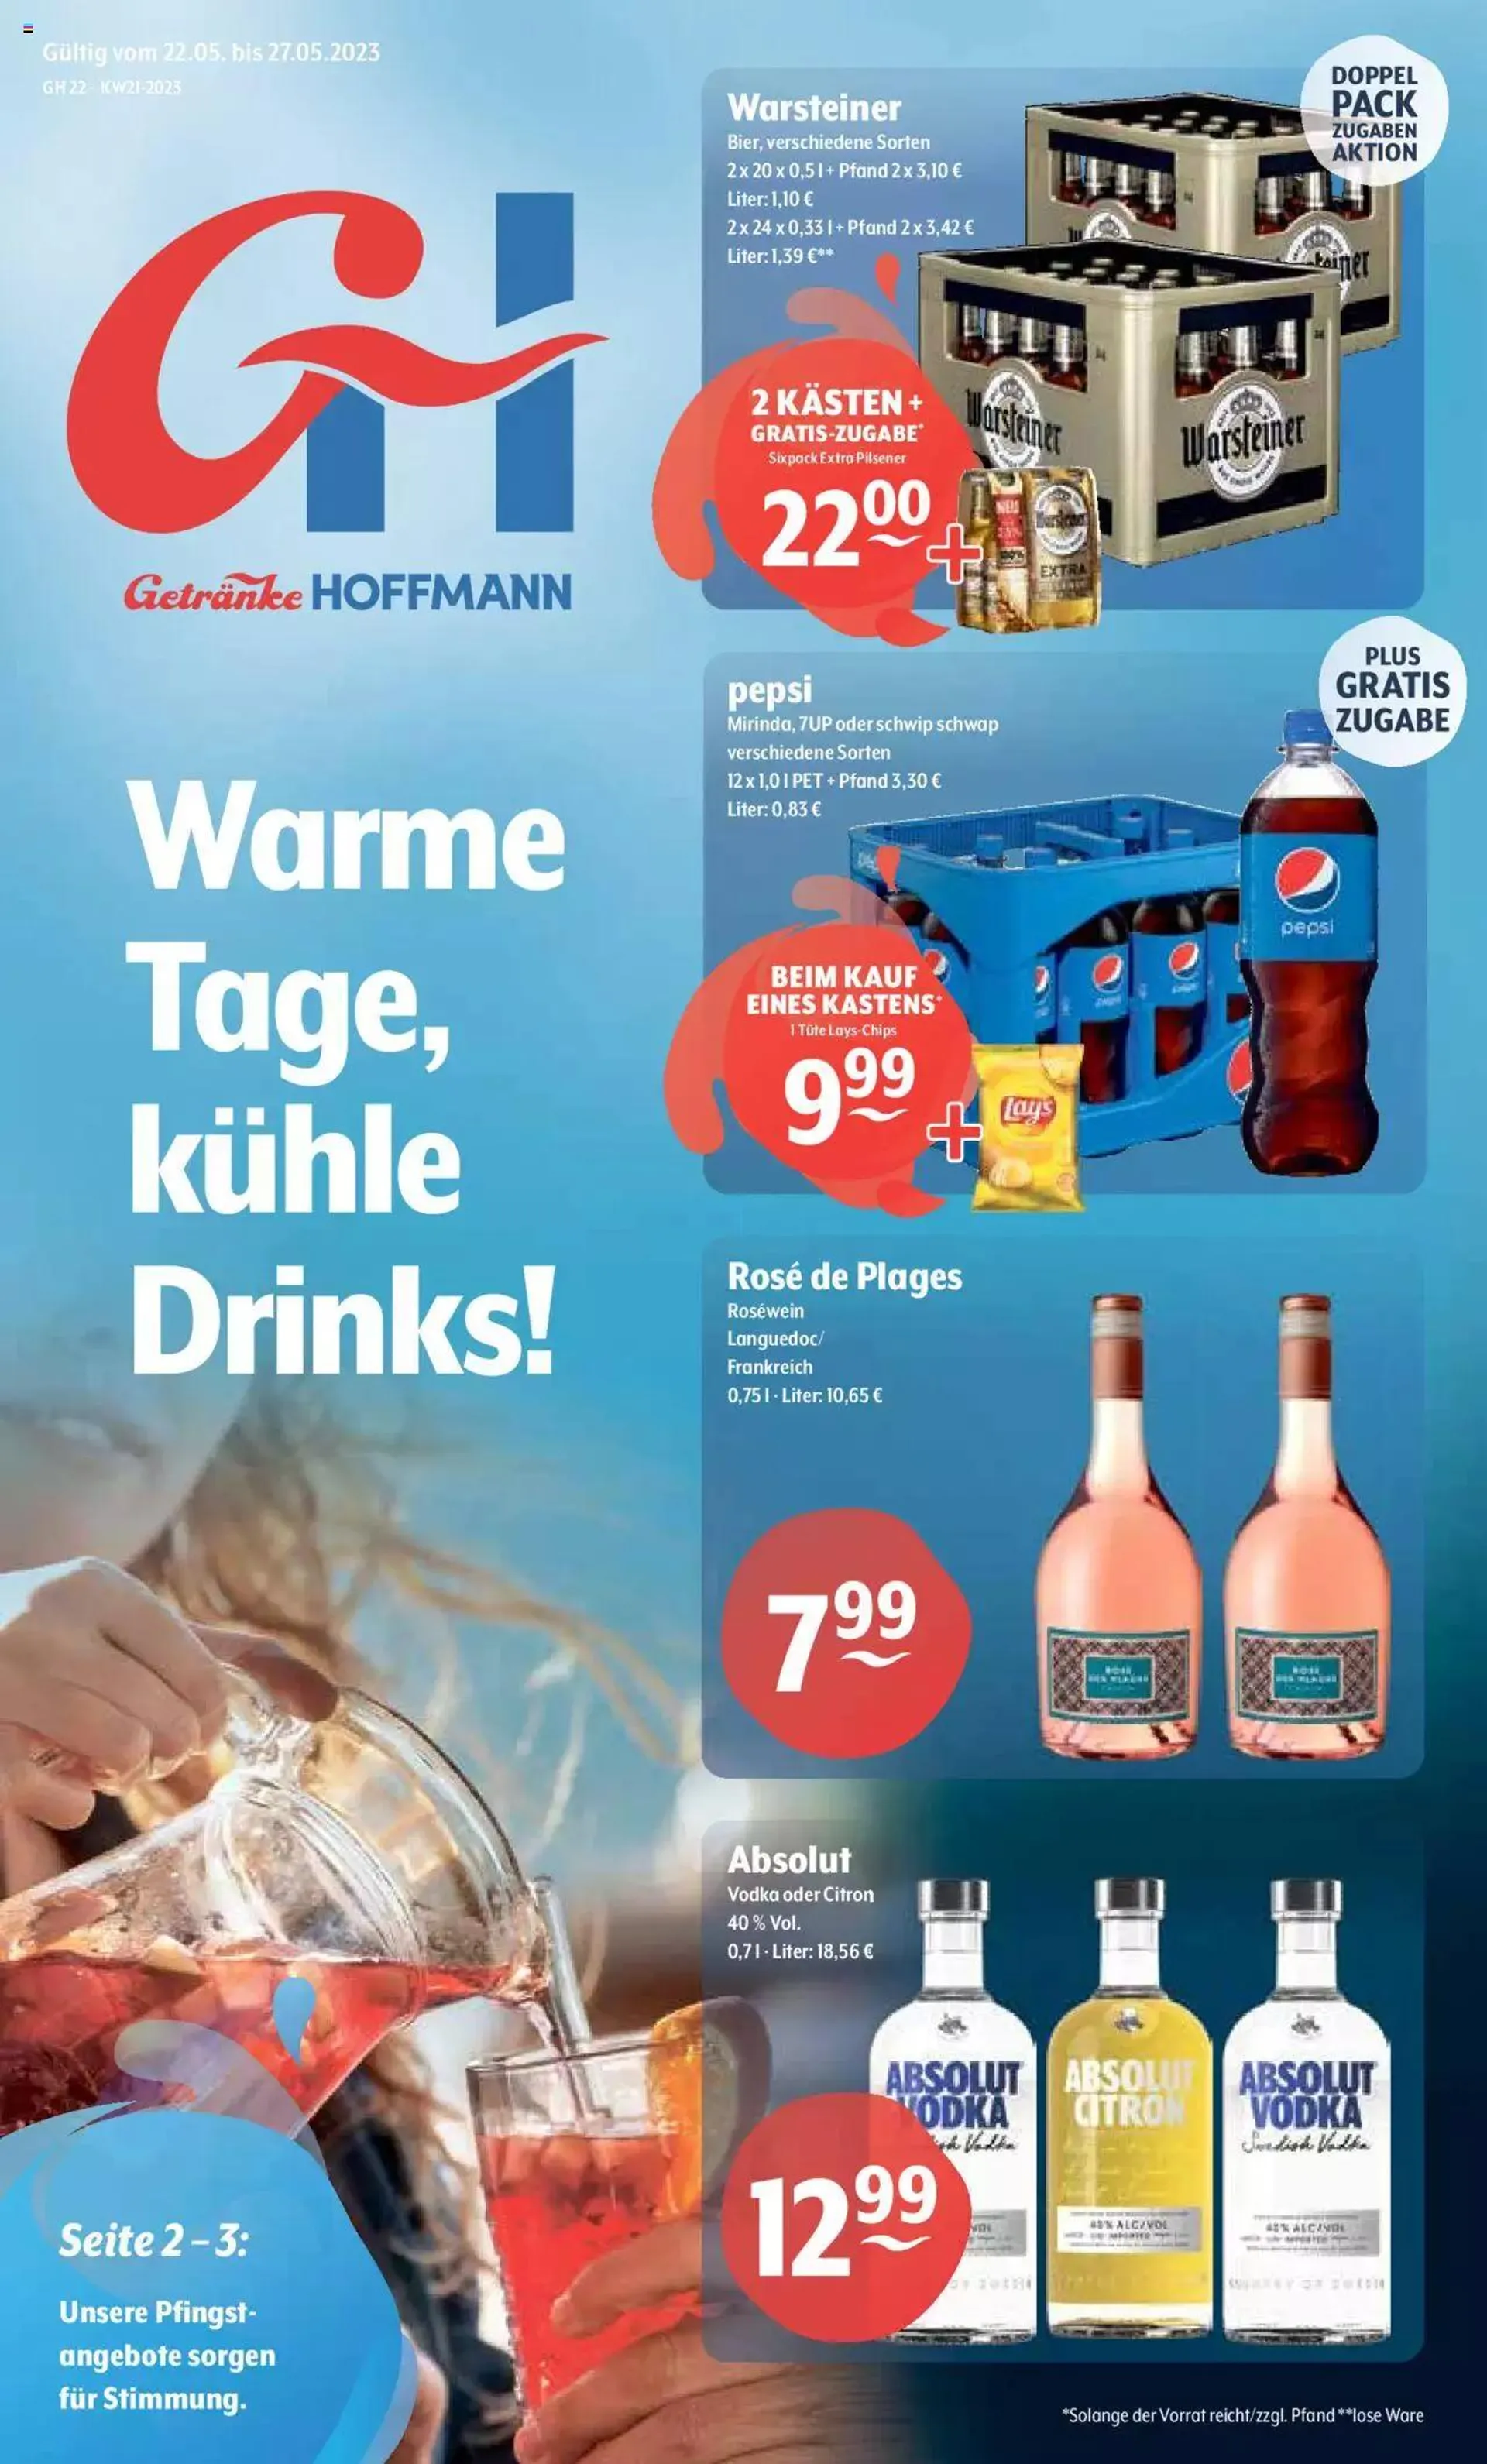 Getränke Hoffmann - Nordrhein - Westfalen - 0